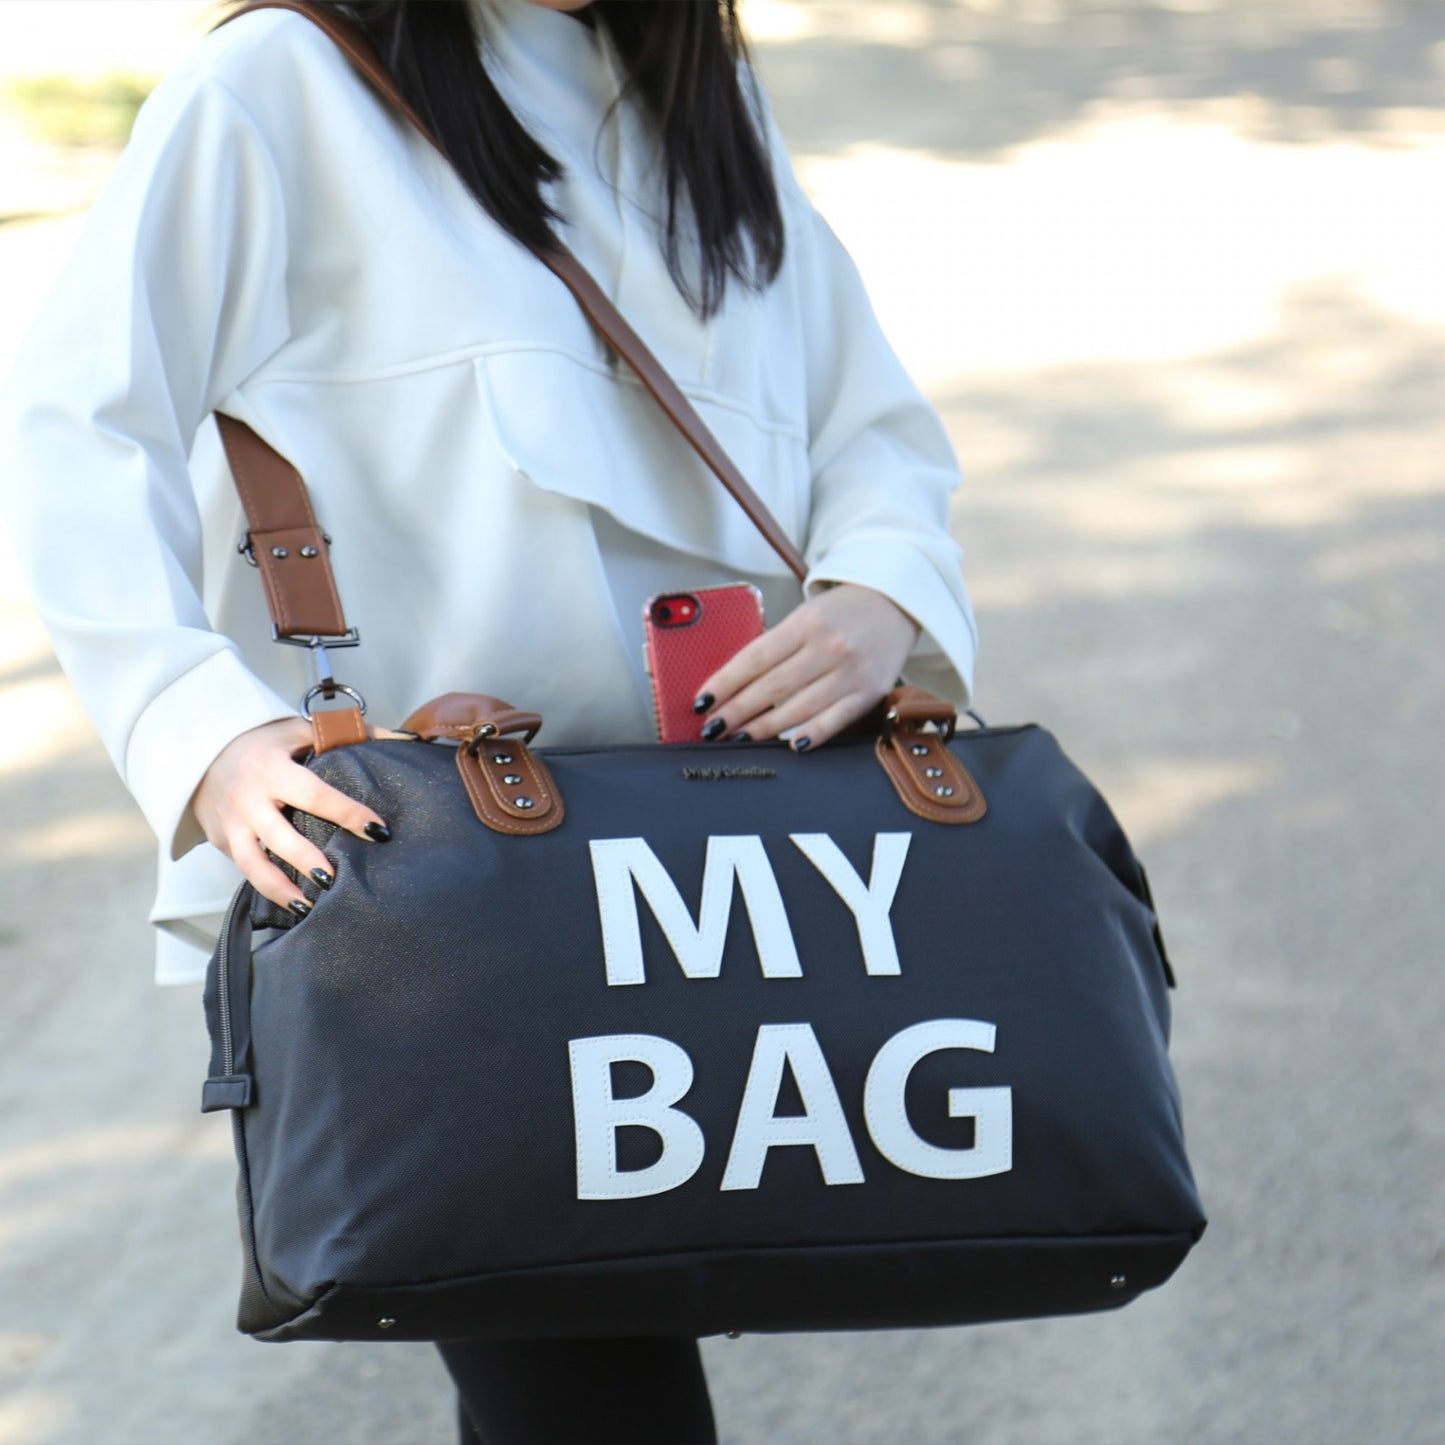 M&Y - My Bag handbag